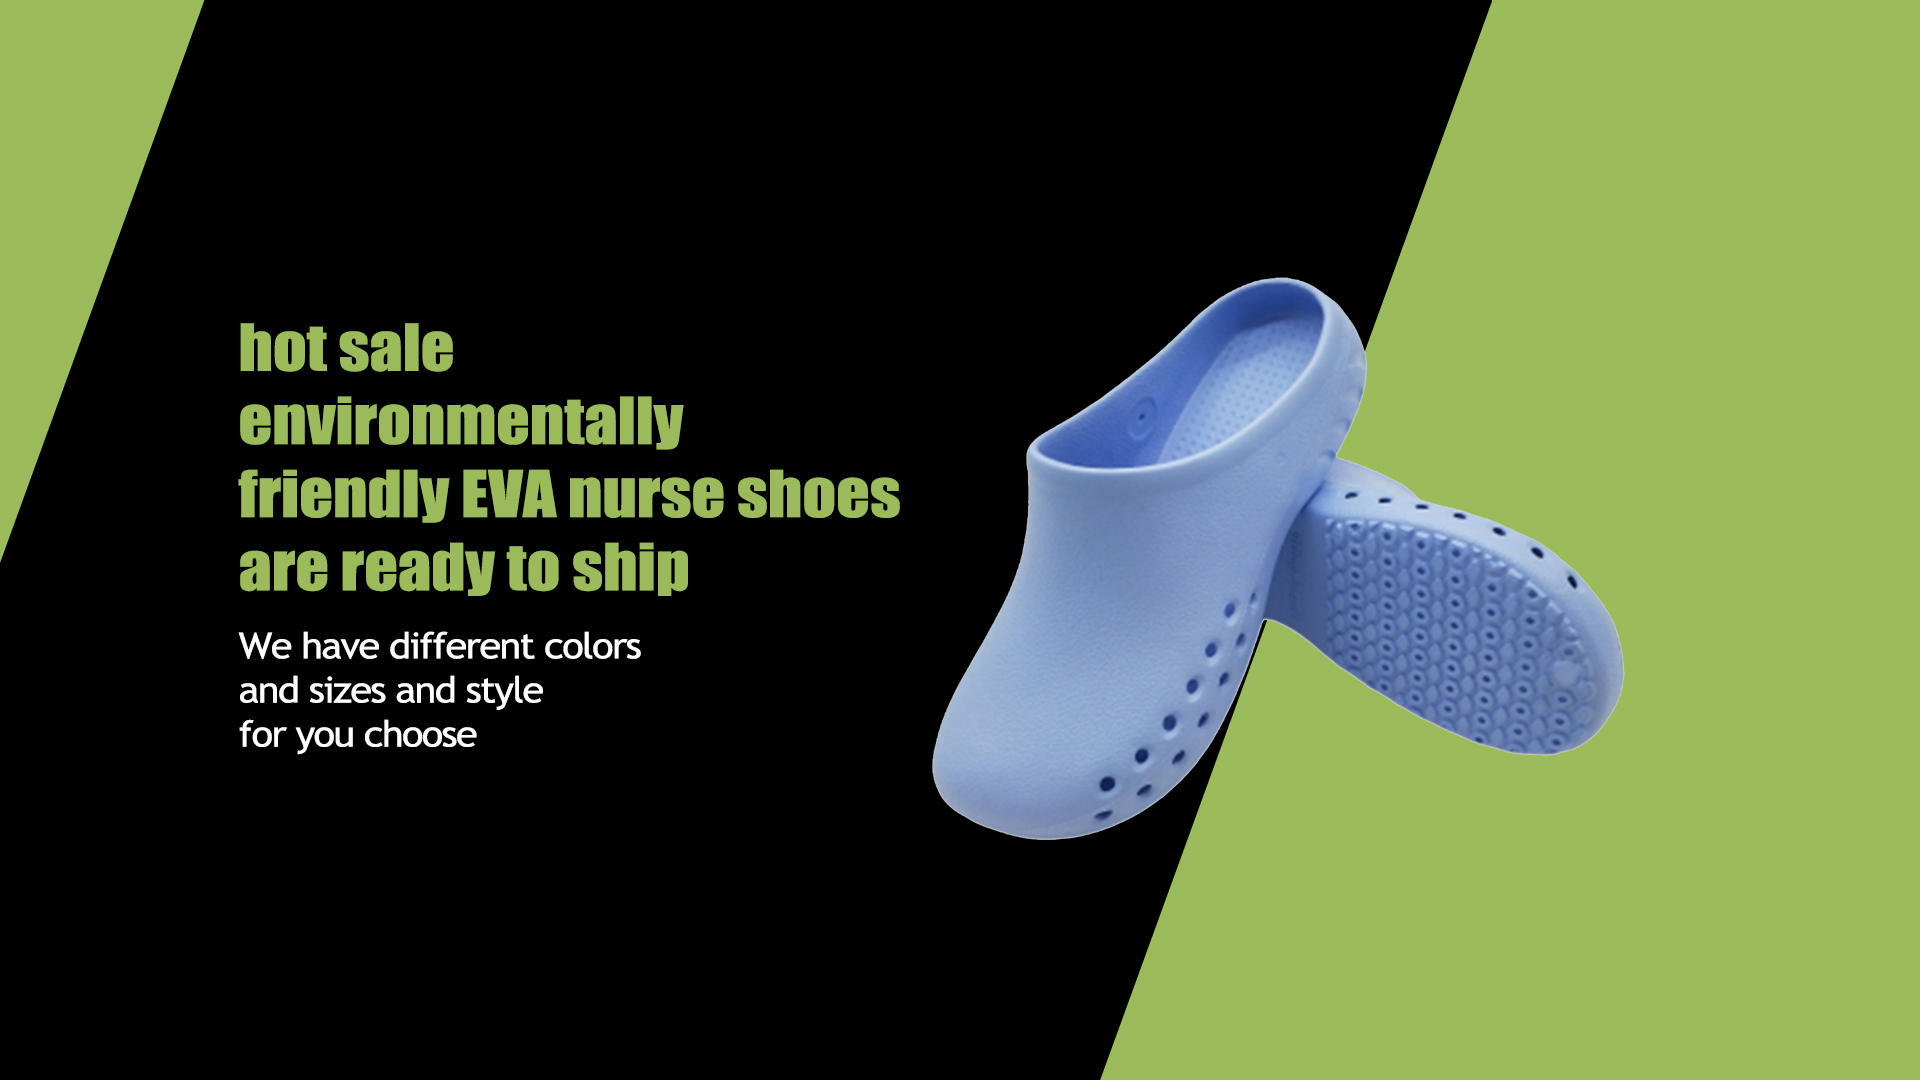 Venda imperdível sapatos de enfermeira EVA ecologicamente corretos estão prontos para enviar